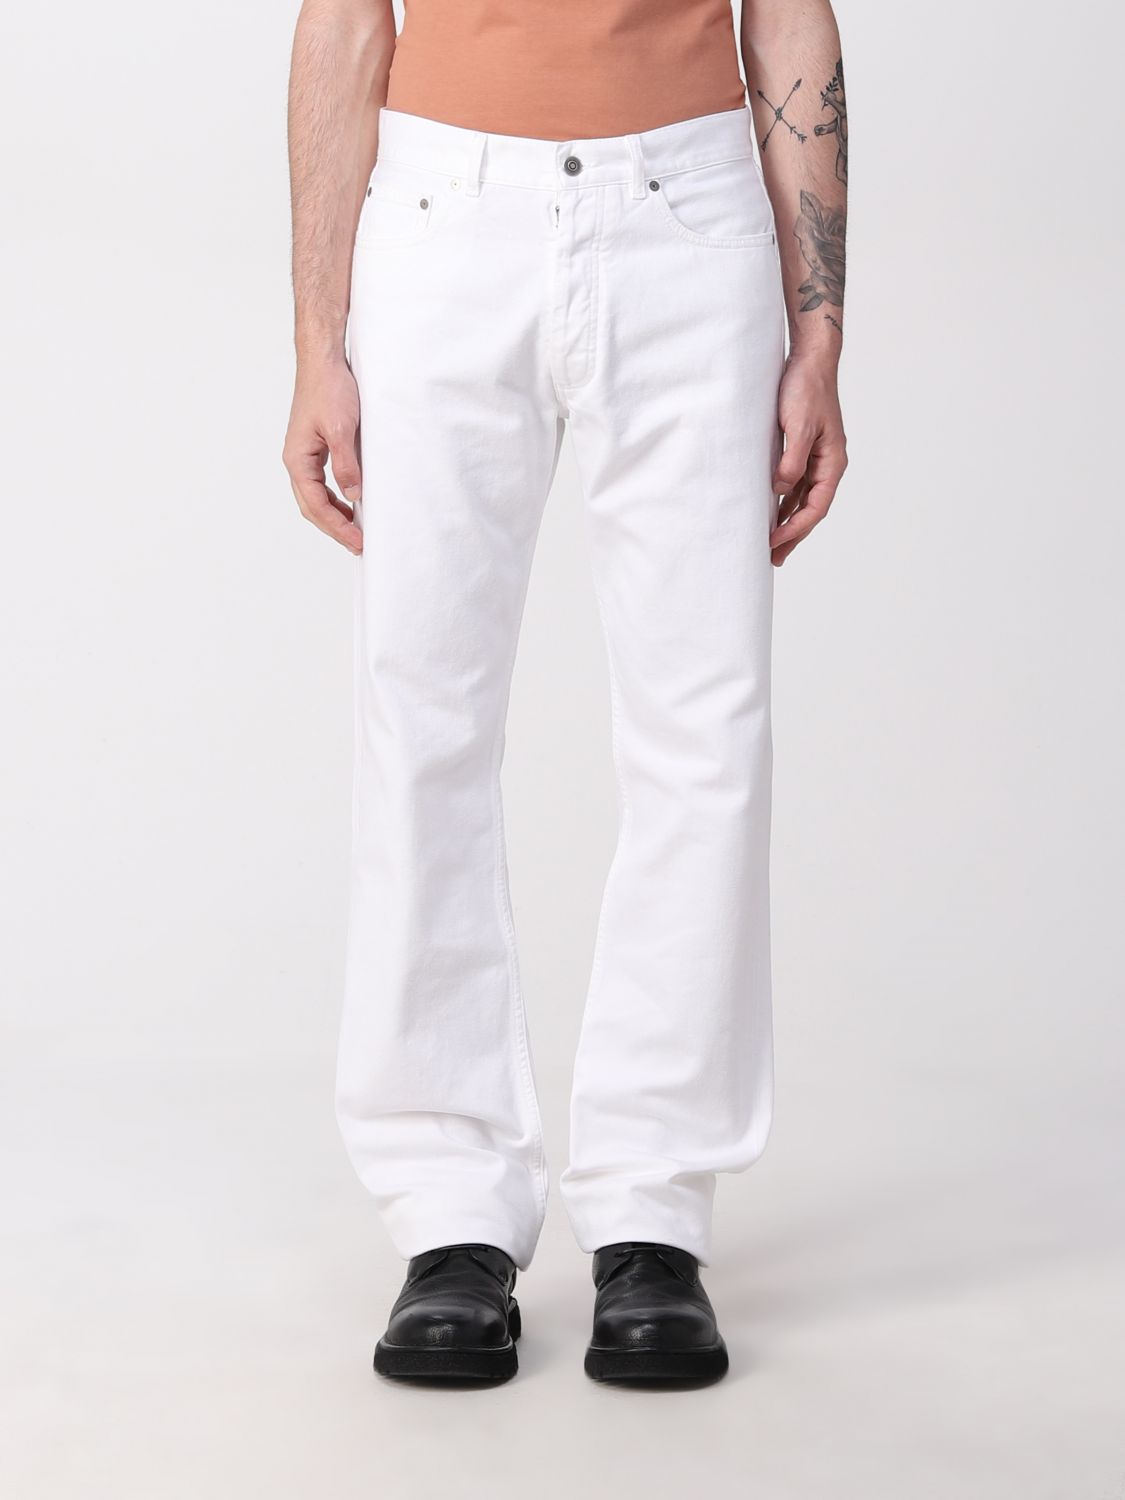 MAISON MARGIELA: cotton denim jeans - White | Maison Margiela jeans ...